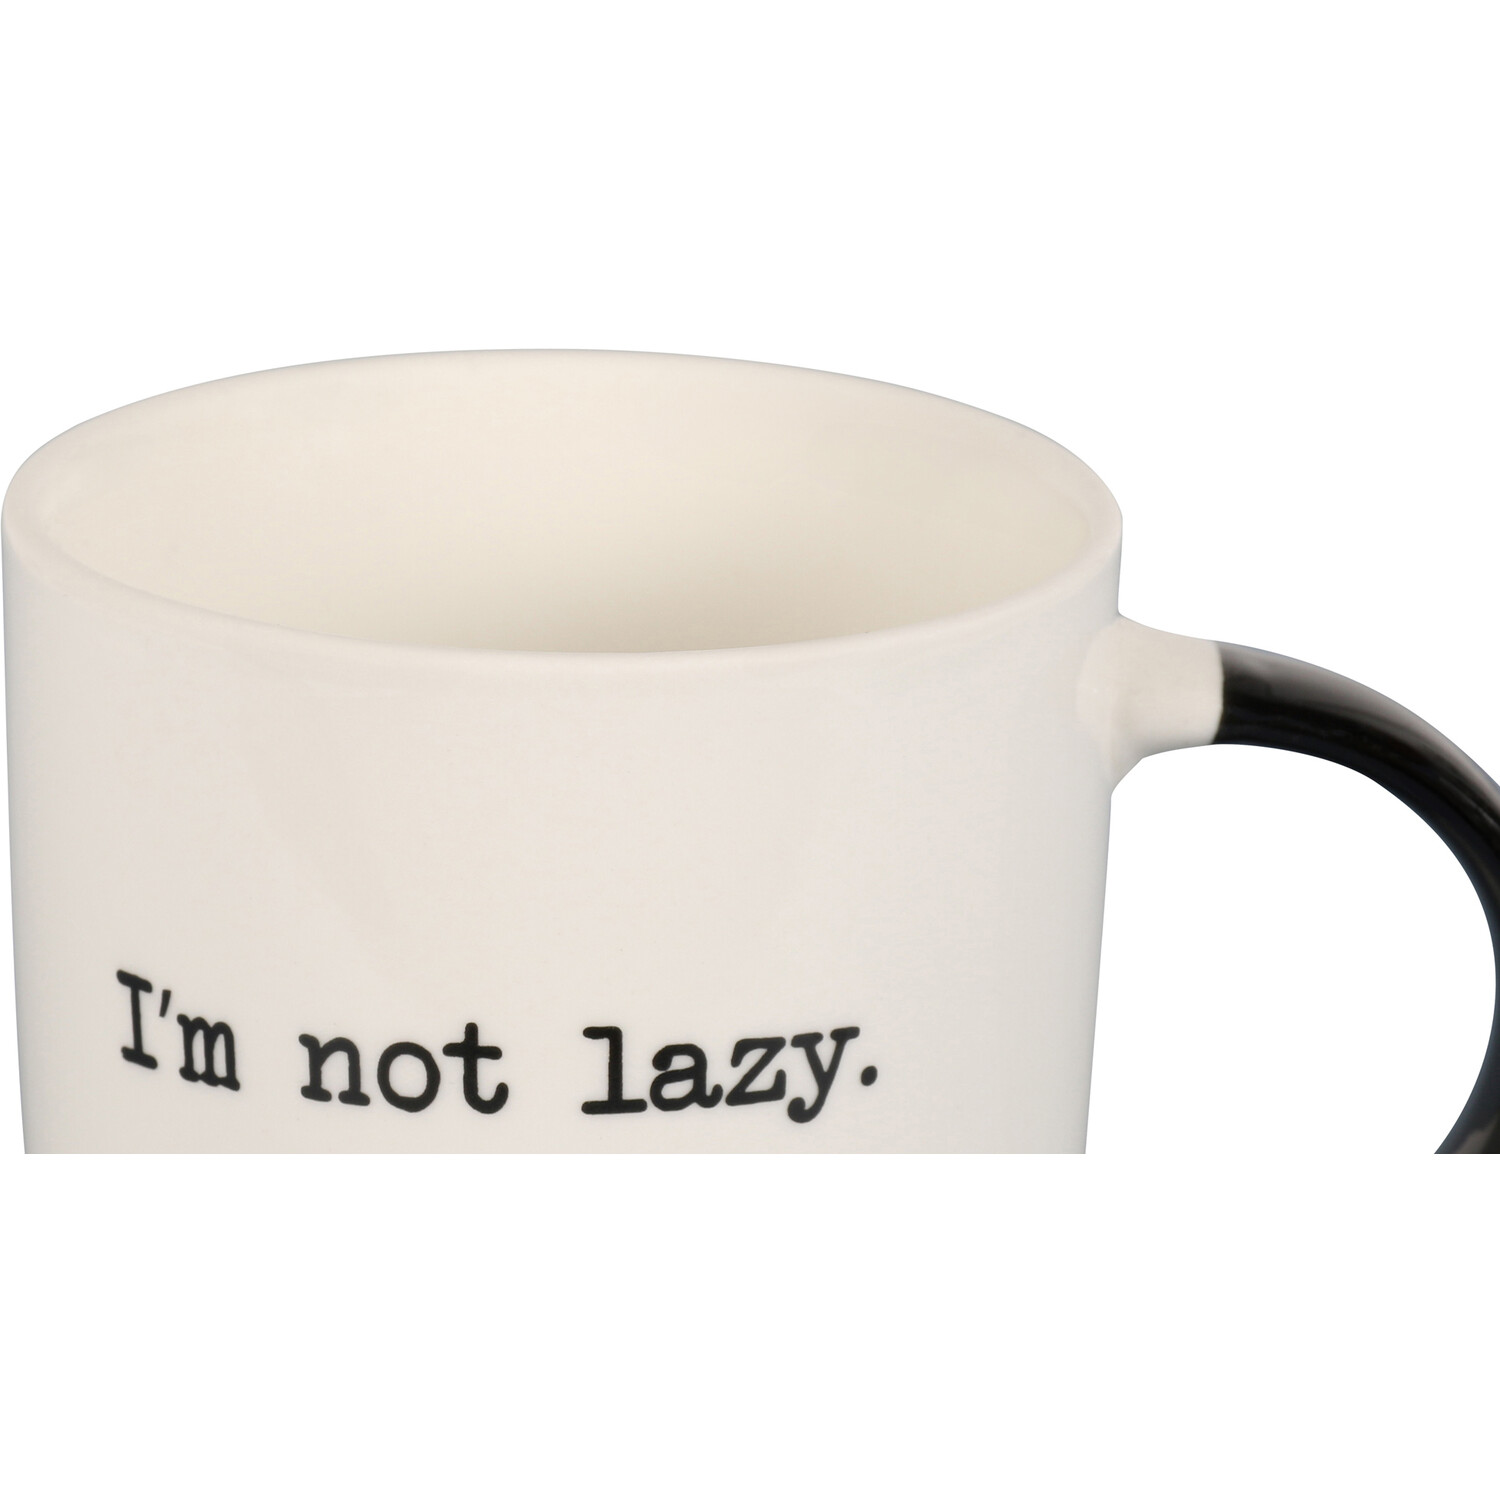 I'm Not Lazy Dublin Mug - White Image 3